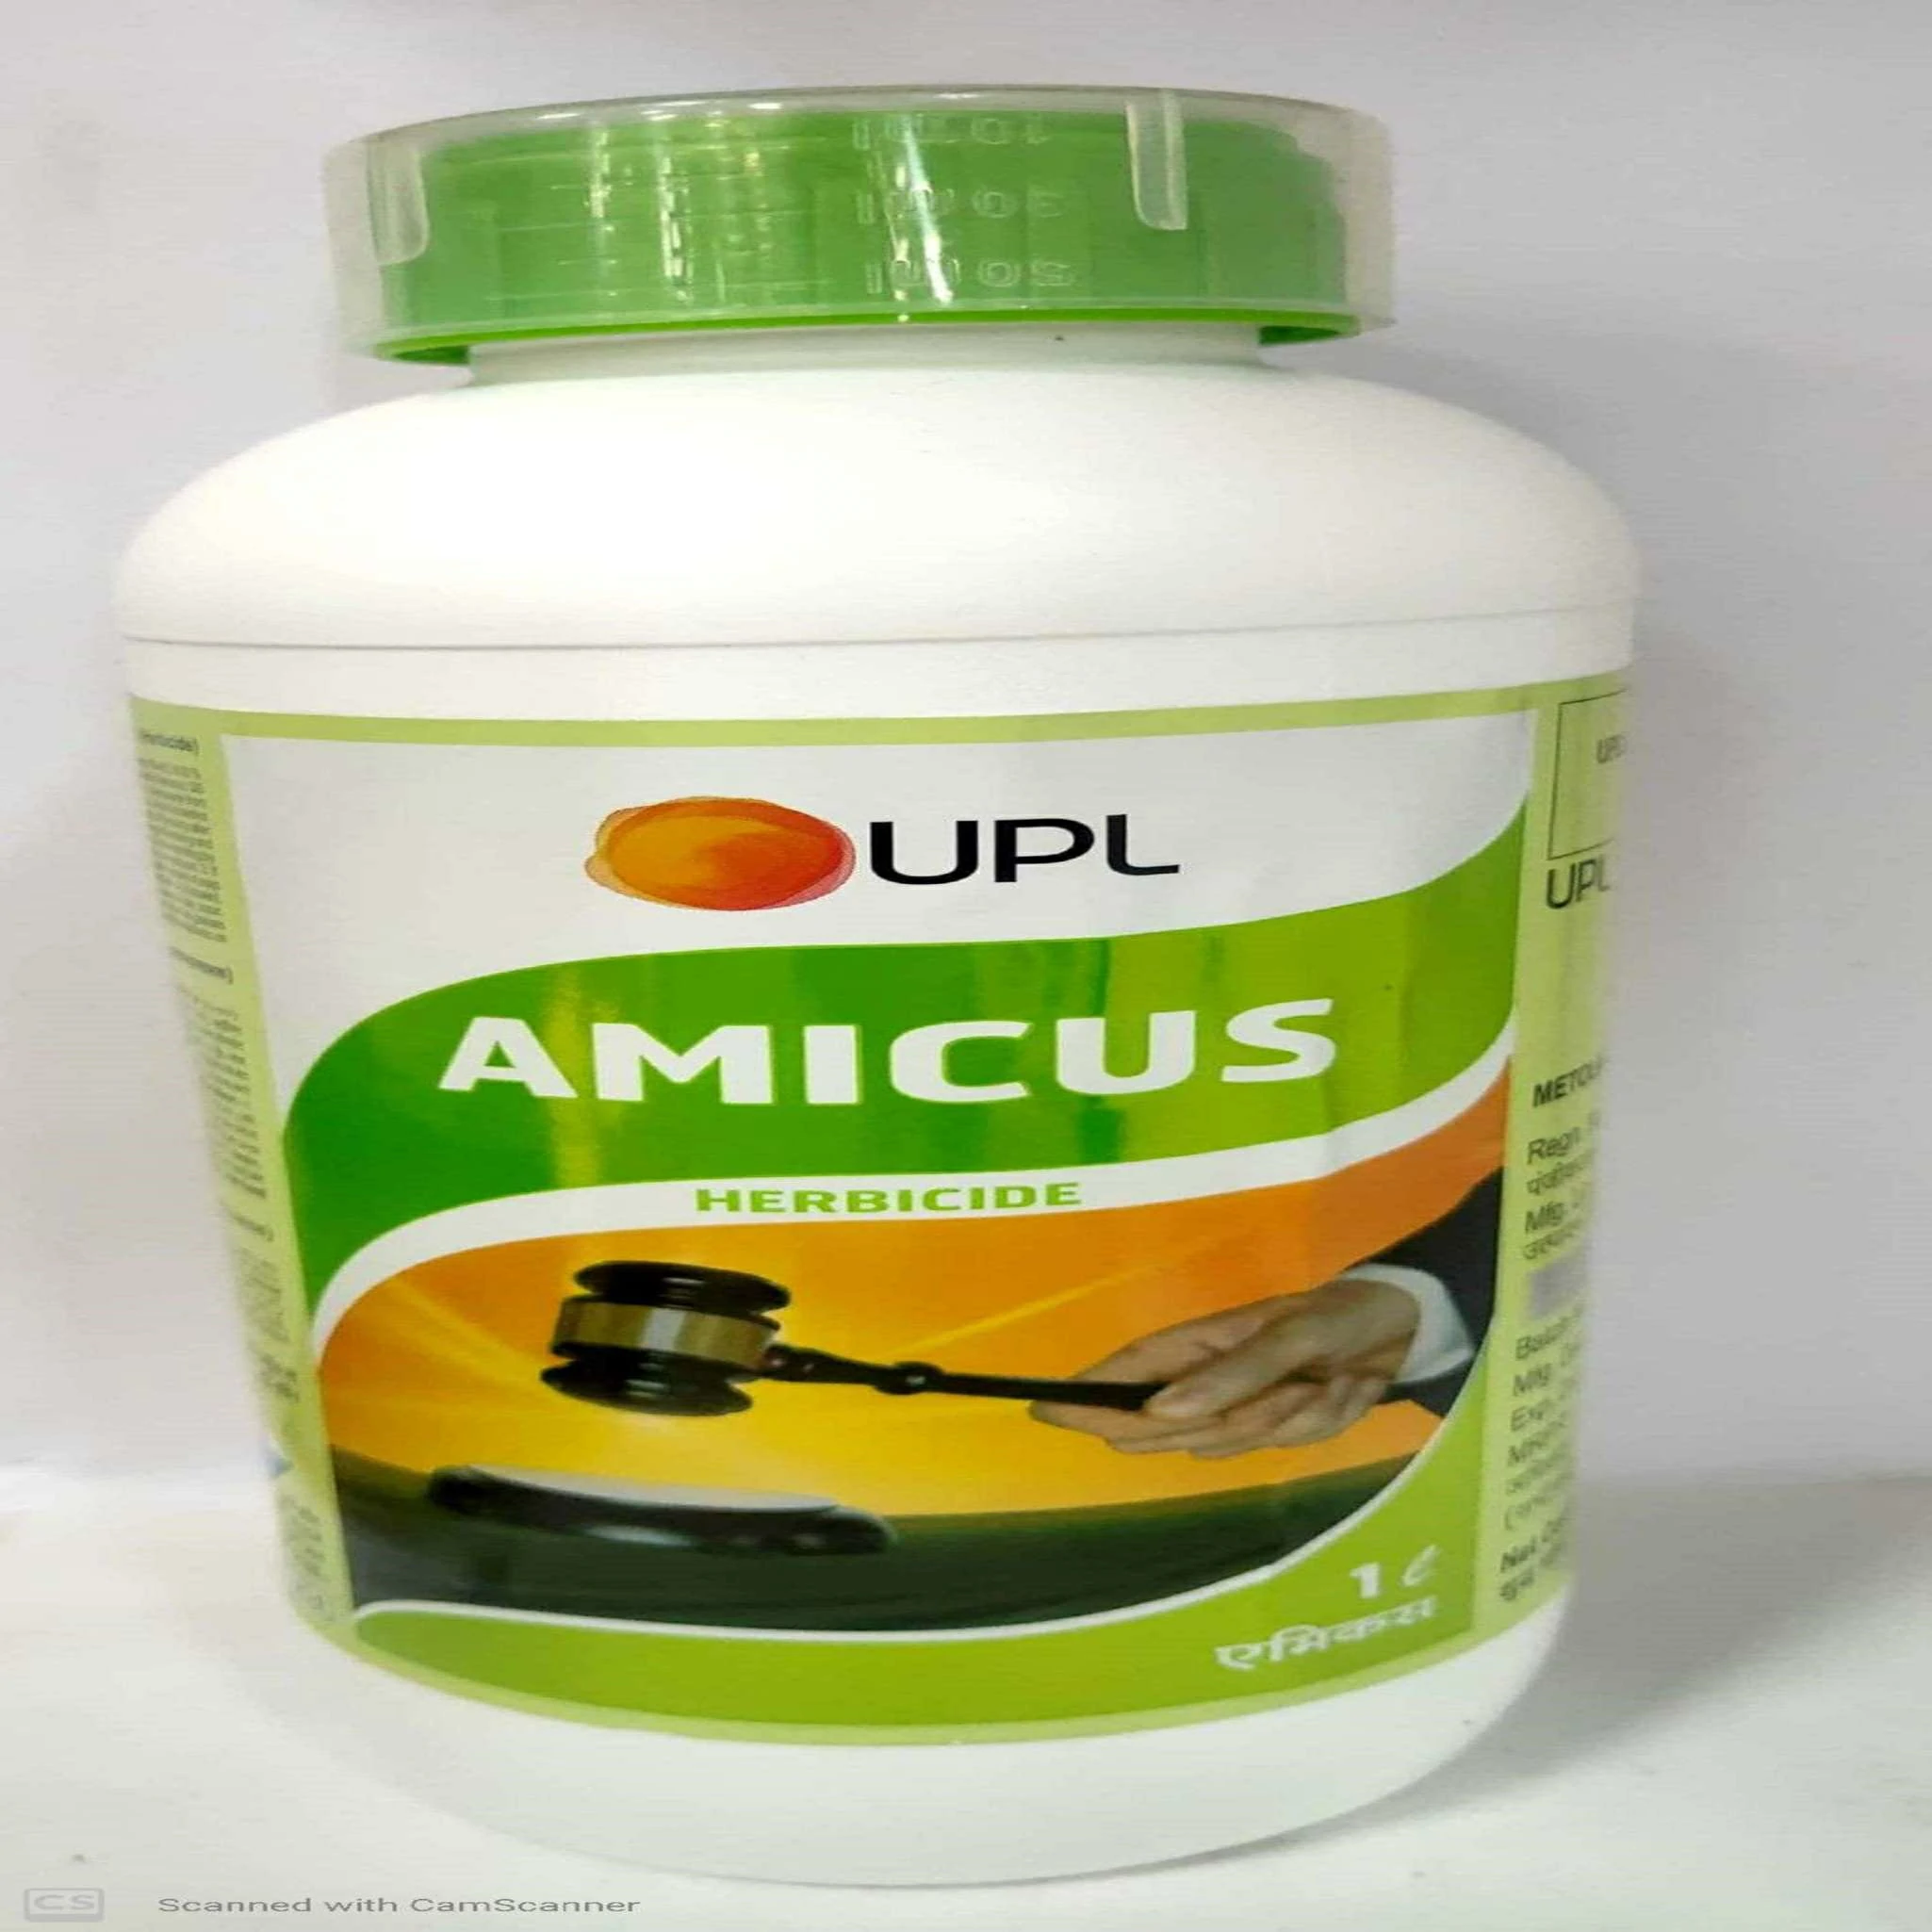 Amicus UPL